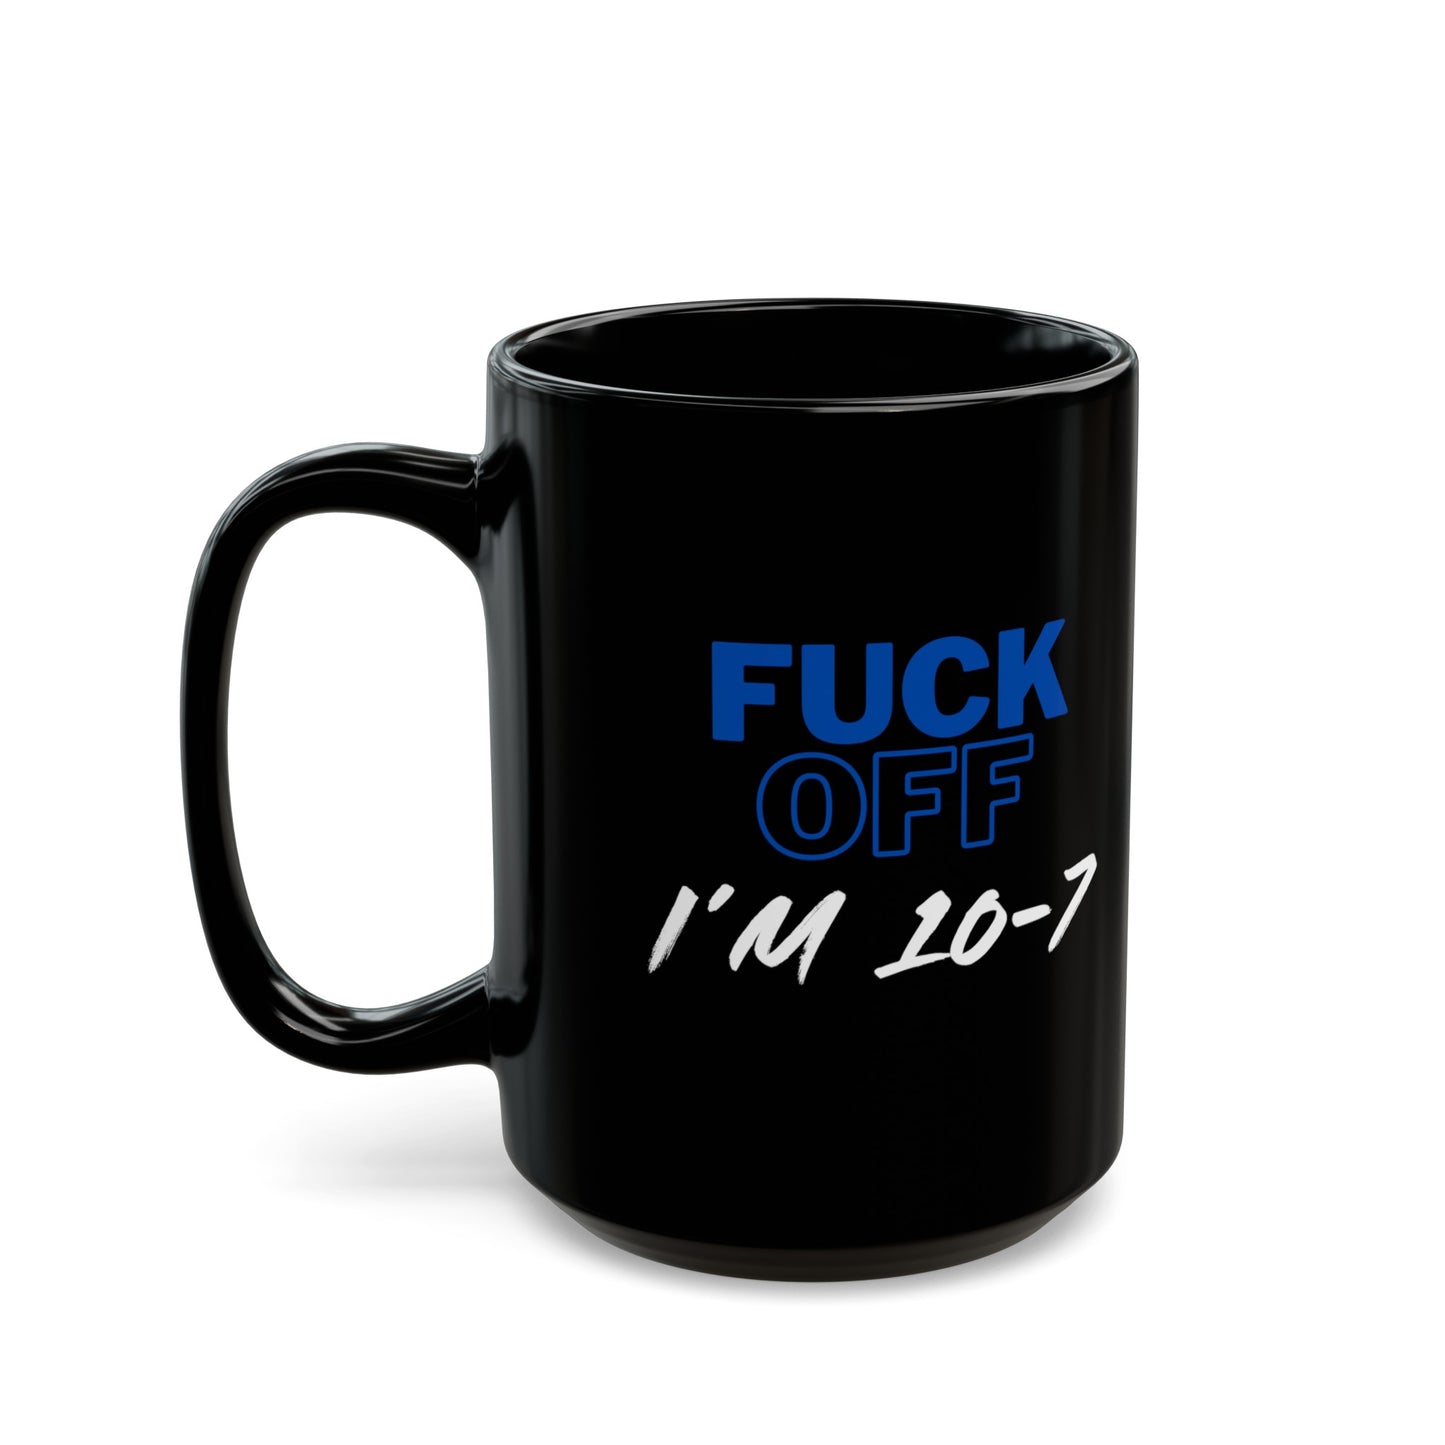 LEO F*** Off 10-7 Coffee Mug